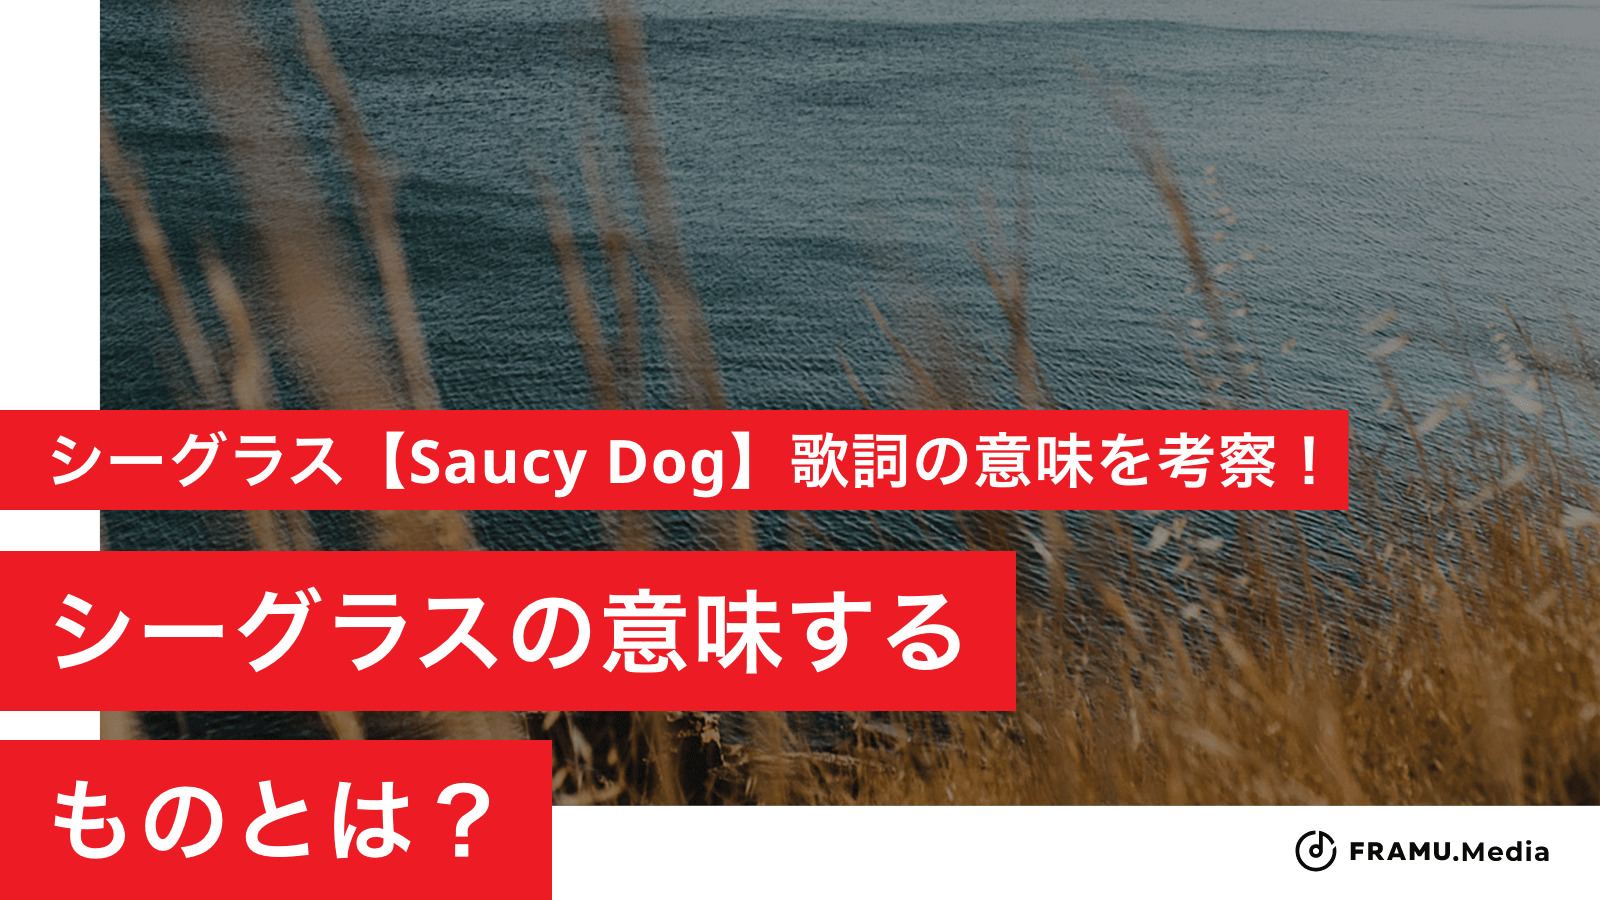 シーグラス【Saucy Dog】歌詞の意味を考察！シーグラスの意味するものとは？ - FRAMU.Media